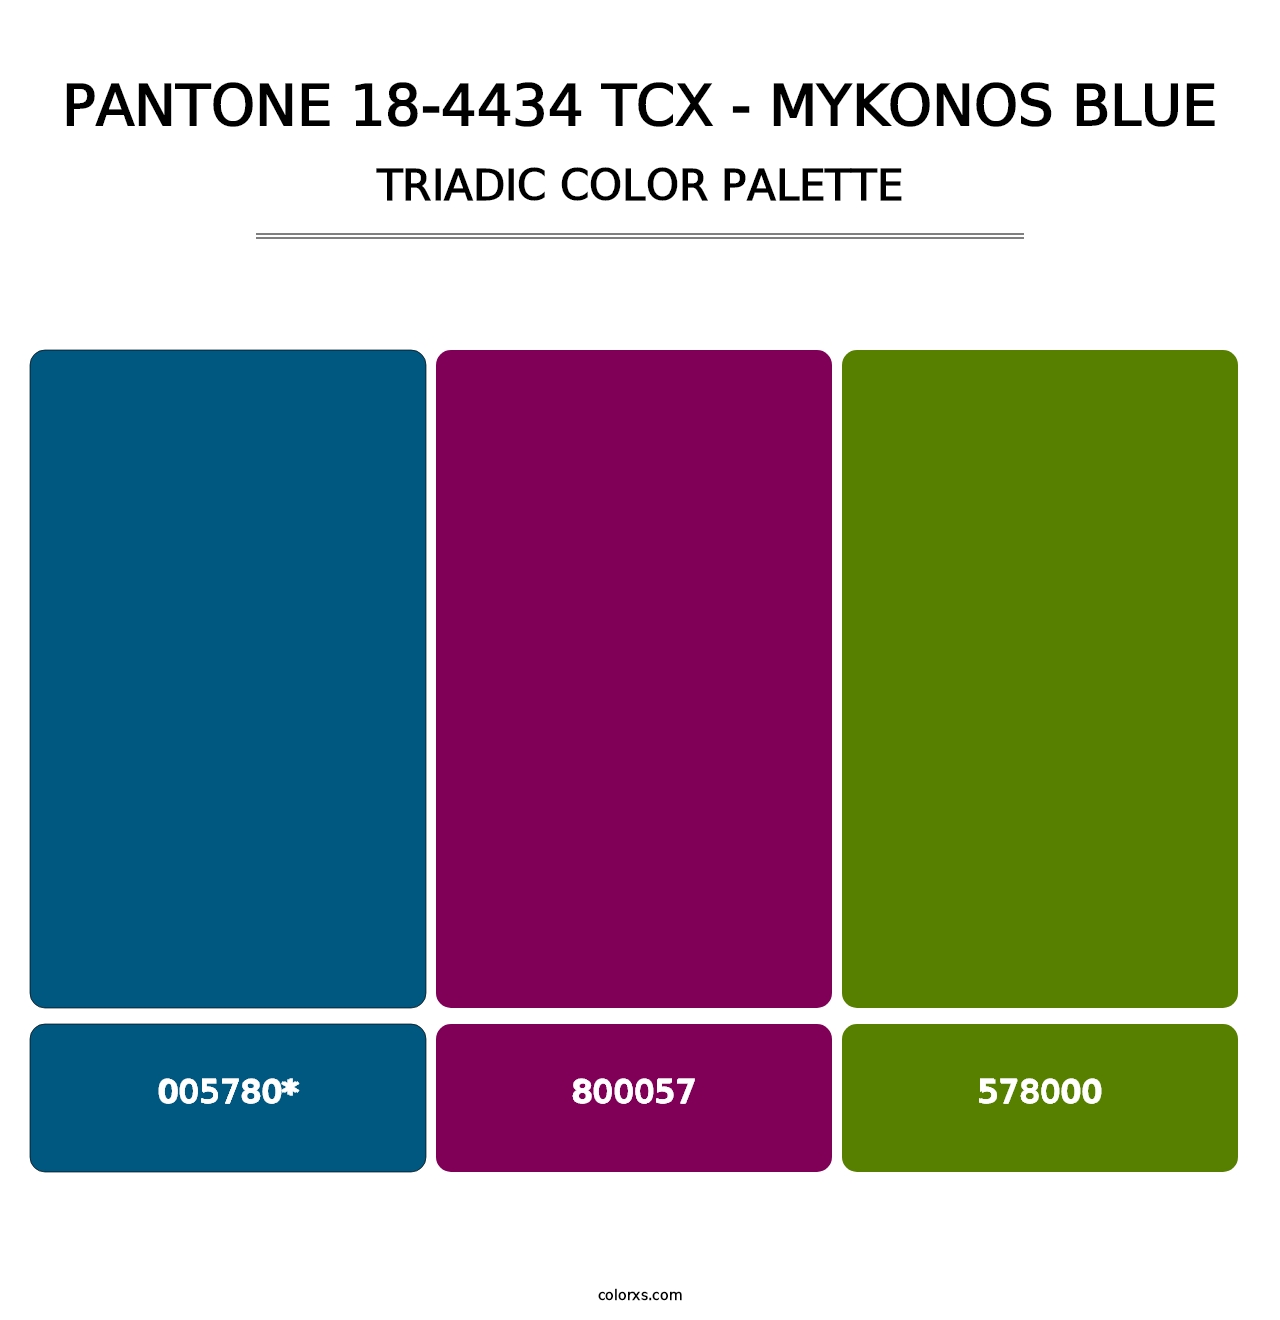 PANTONE 18-4434 TCX - Mykonos Blue - Triadic Color Palette